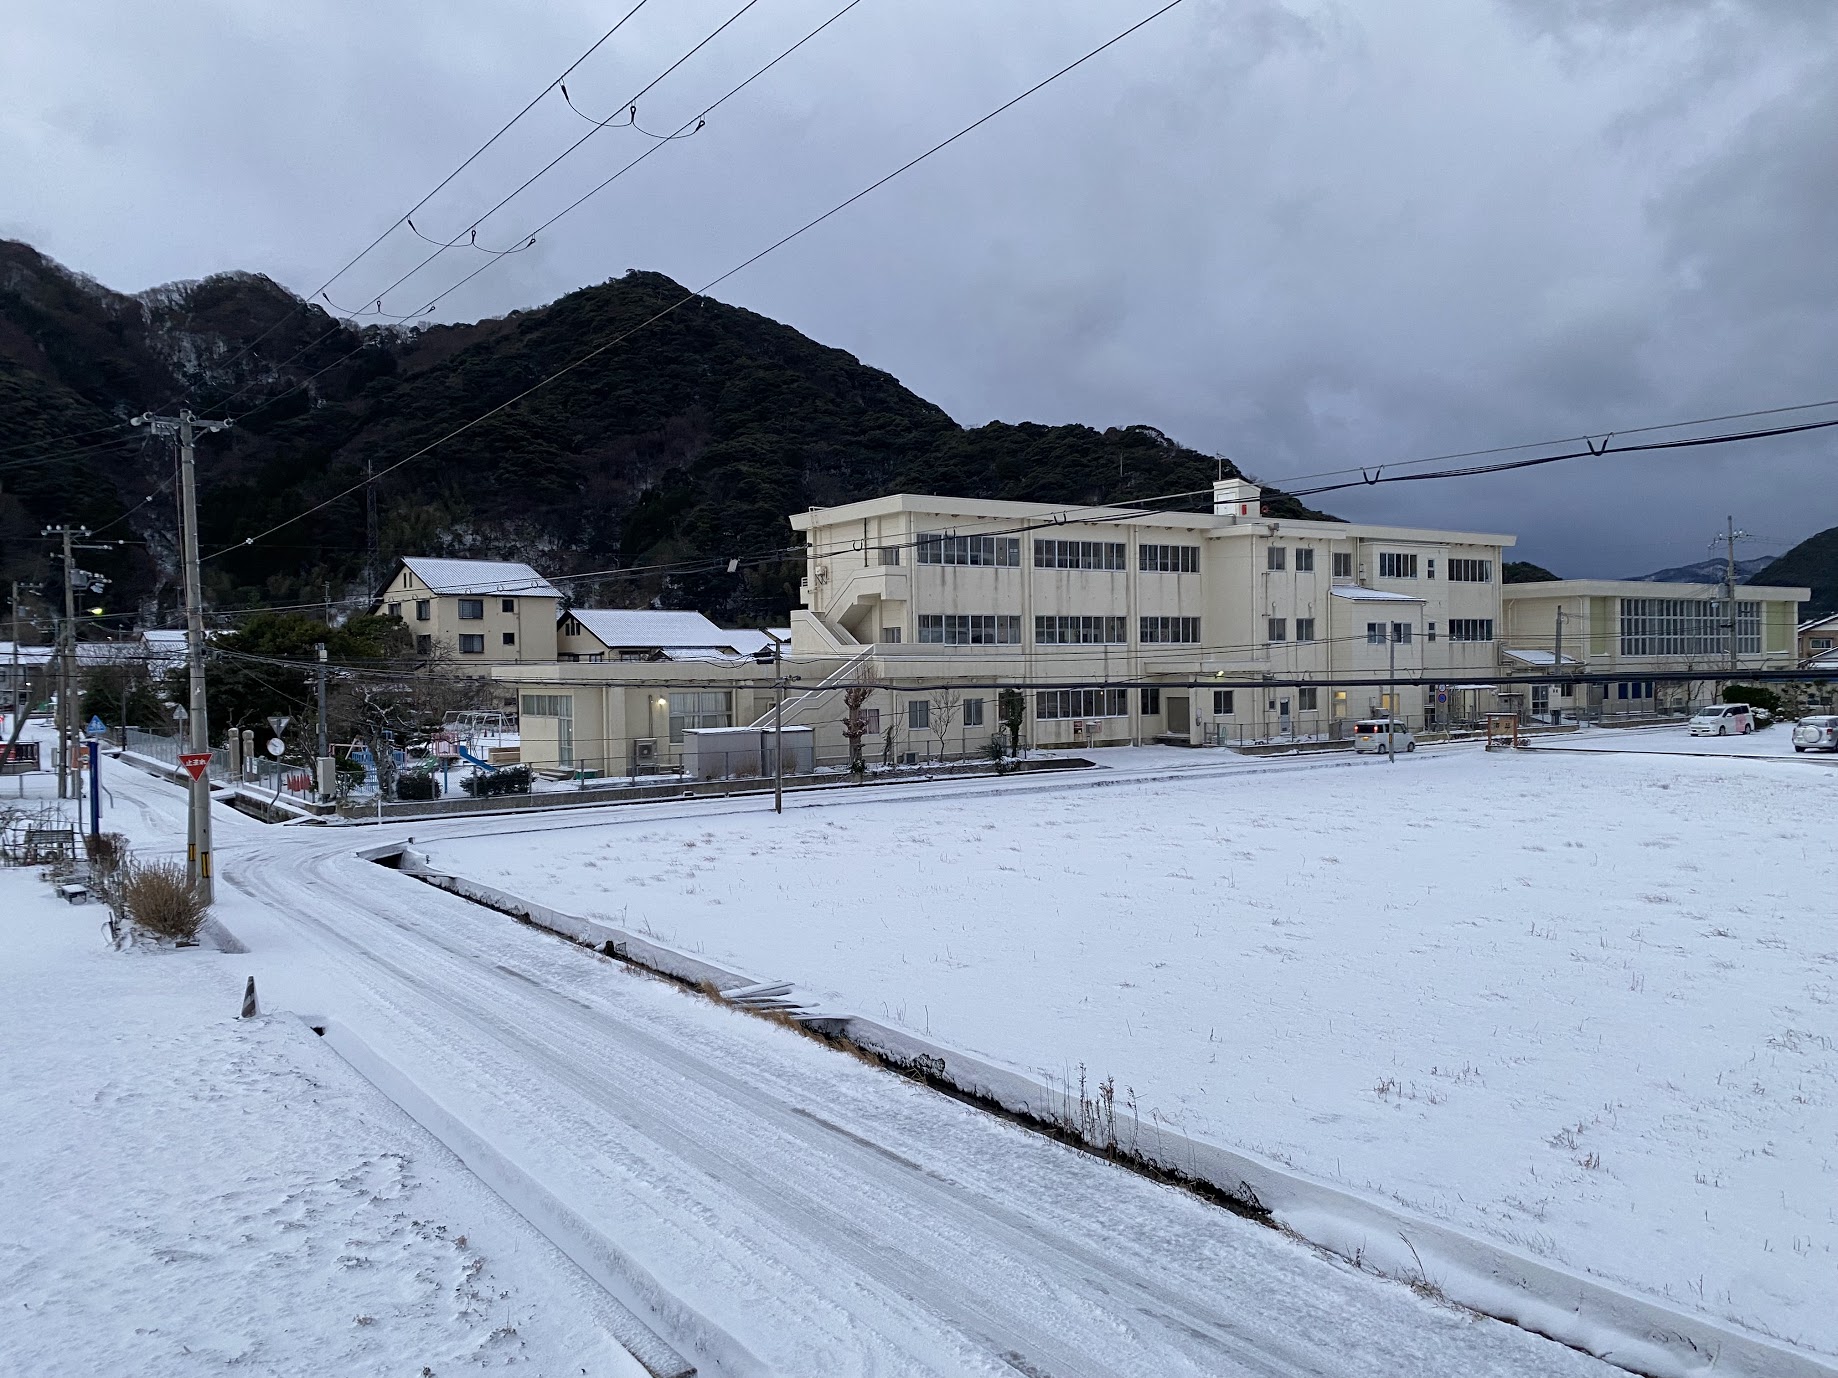 佐津集落1/25朝の様子。雪は止んでいます